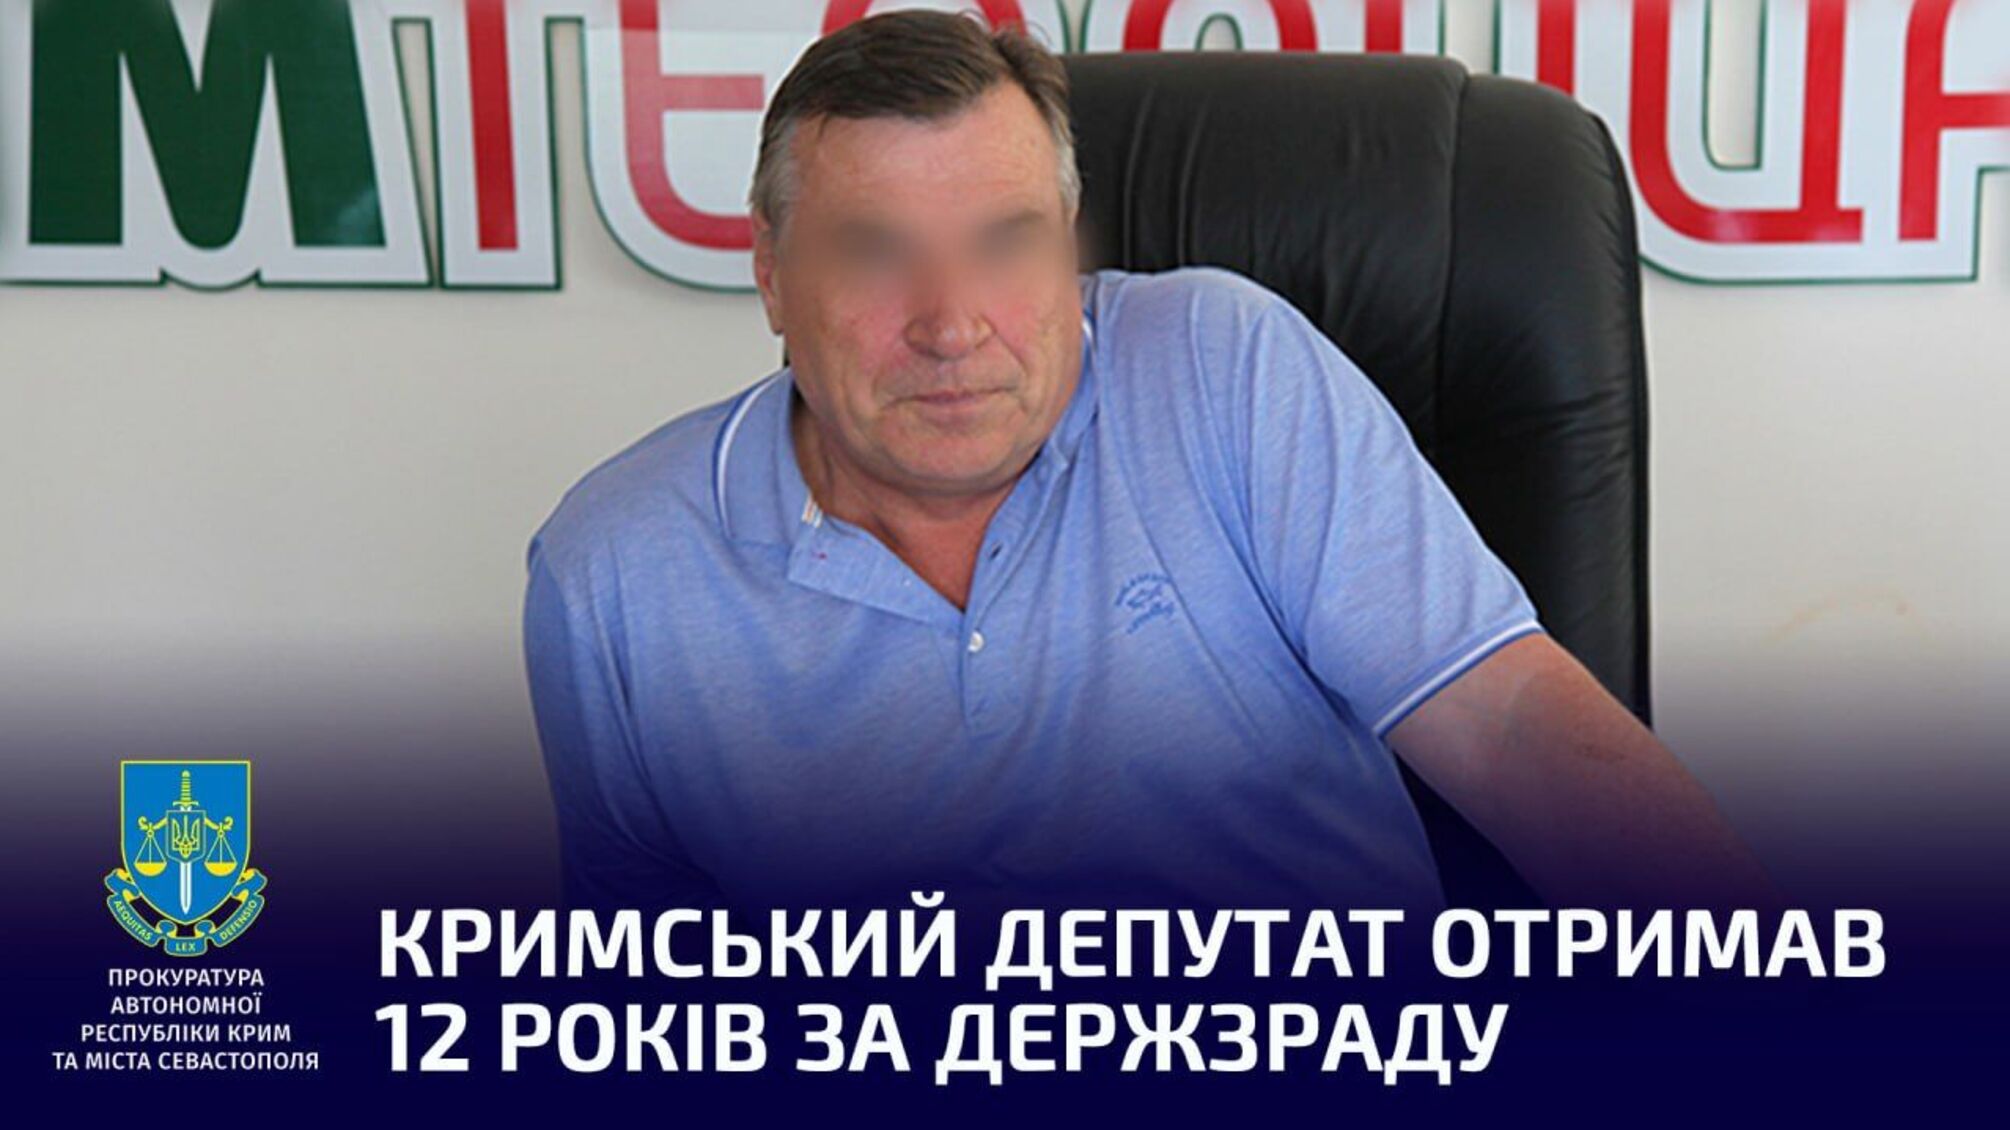 Крымский депутат получил 12 лет за госизмену: названо имя